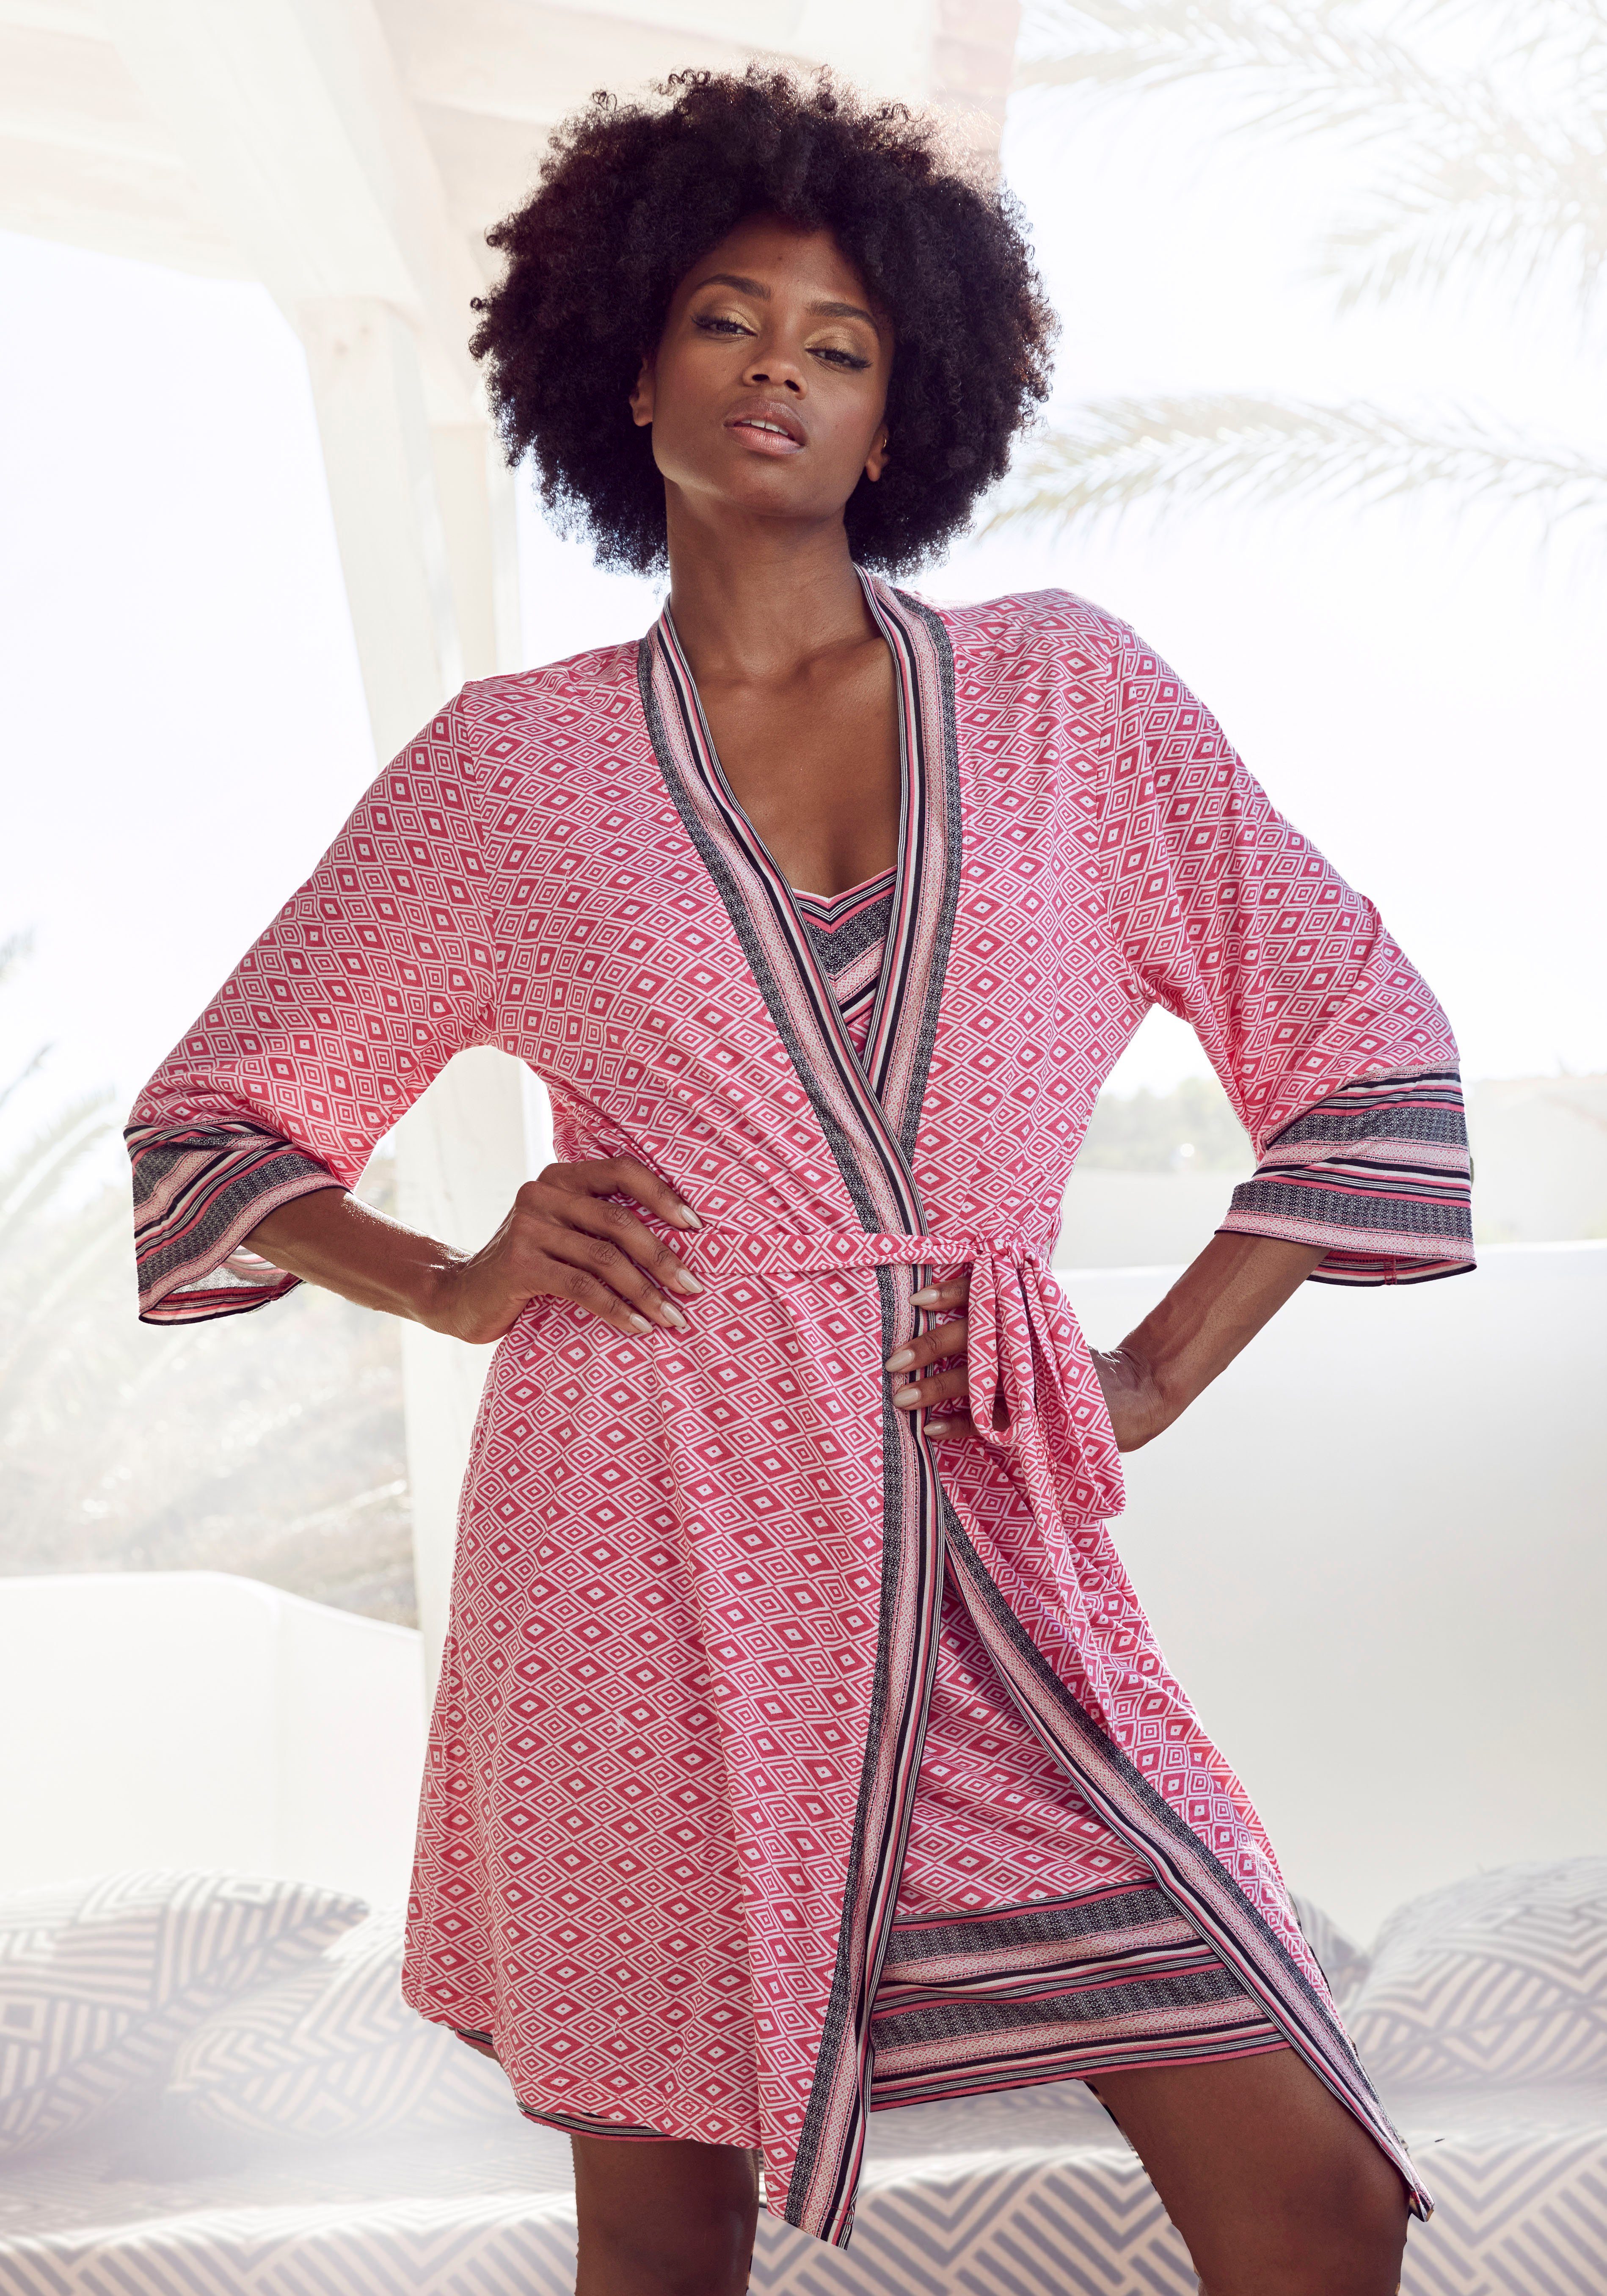 Weitere Preissenkungen! Vivance Dreams Kimono, Kurzform, Ethno-Design Kimono-Kragen, Gürtel, pink gemustert schönem in Single-Jersey